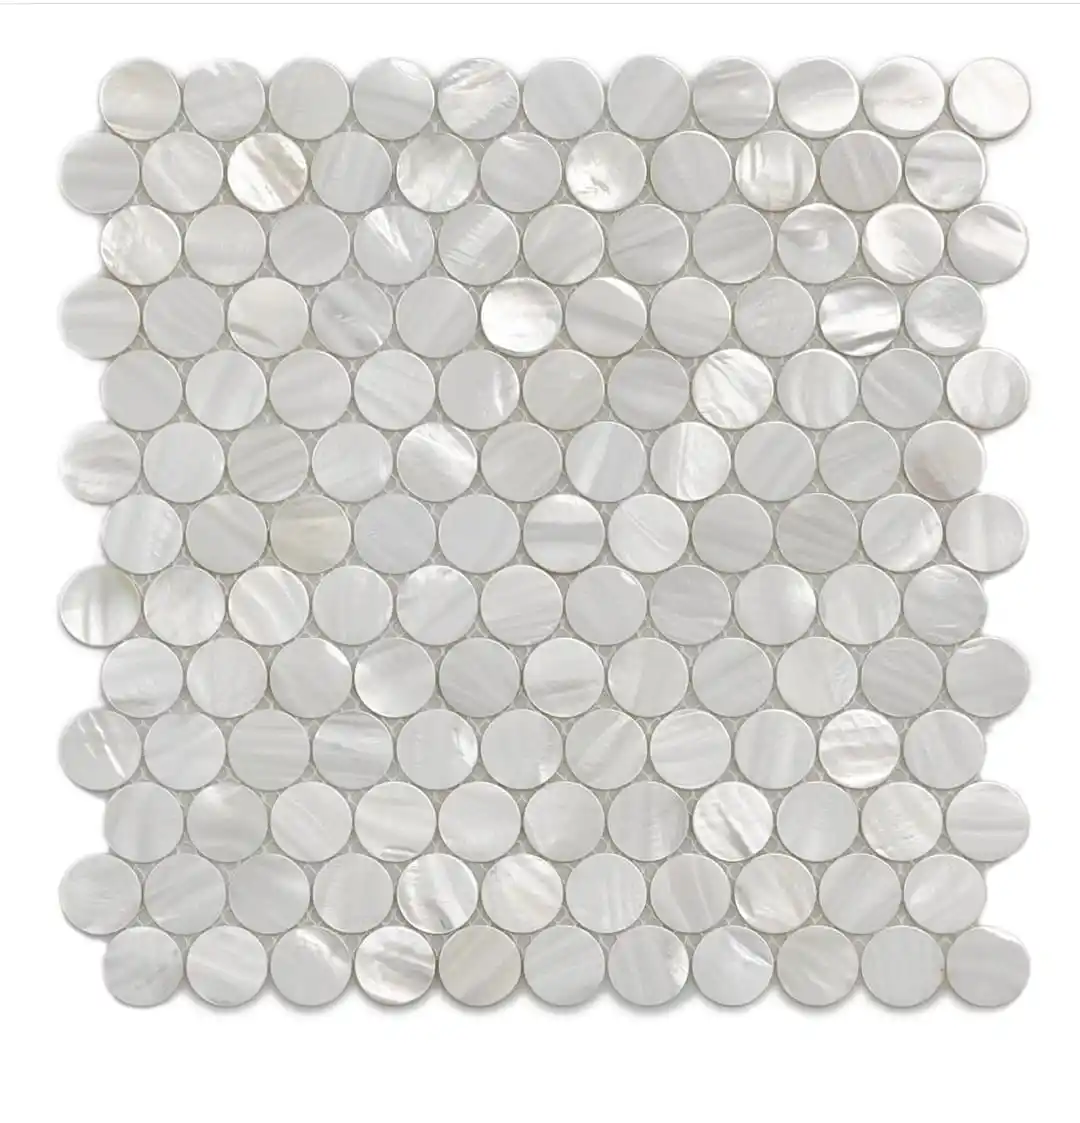 Shell Mosaic Natural madreperla Tile decorazione della parete del bagno all'ingrosso madreperla mosaico Wall tile art